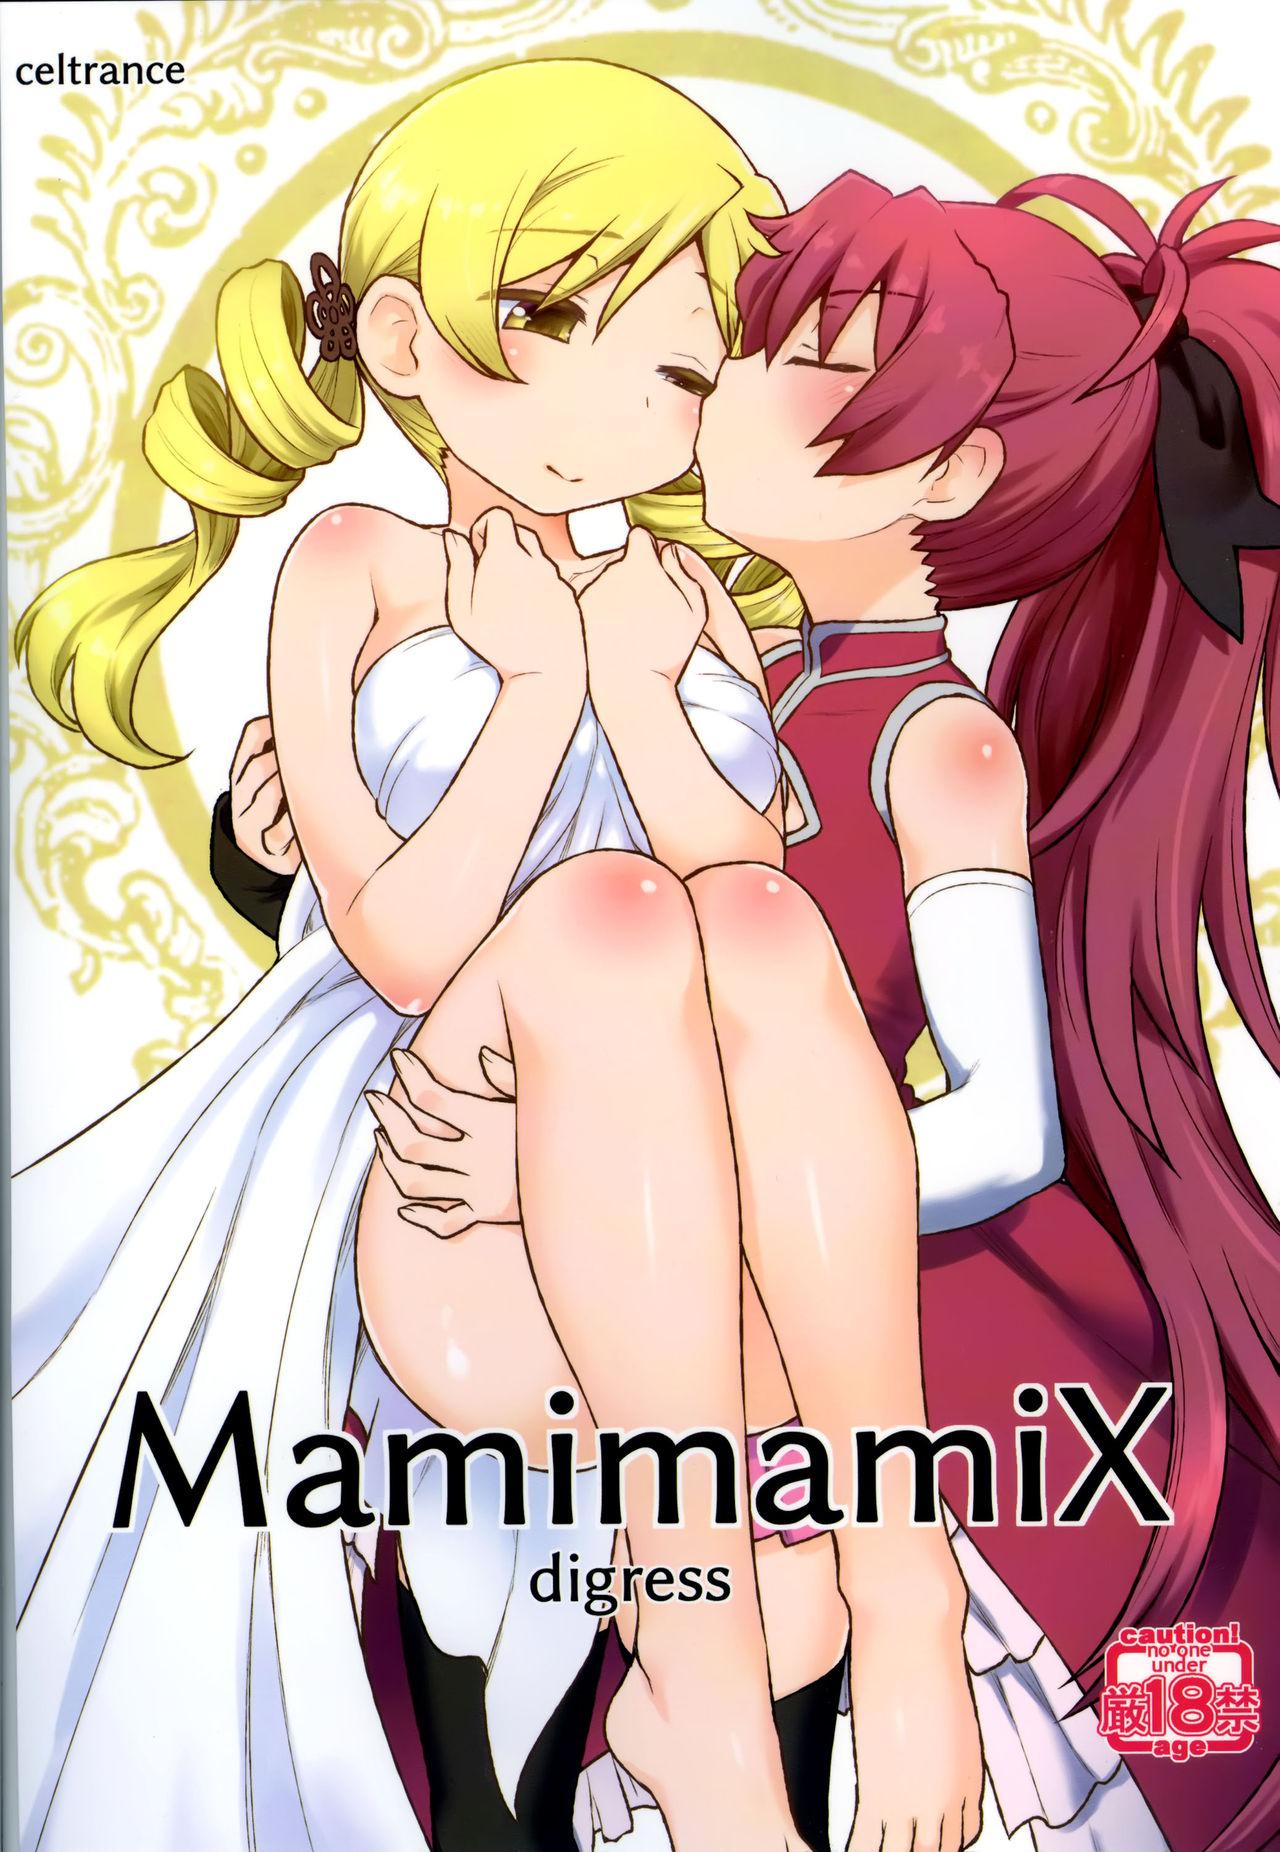 Alone MamimamiX digress - Puella magi madoka magica Bbw - Page 2